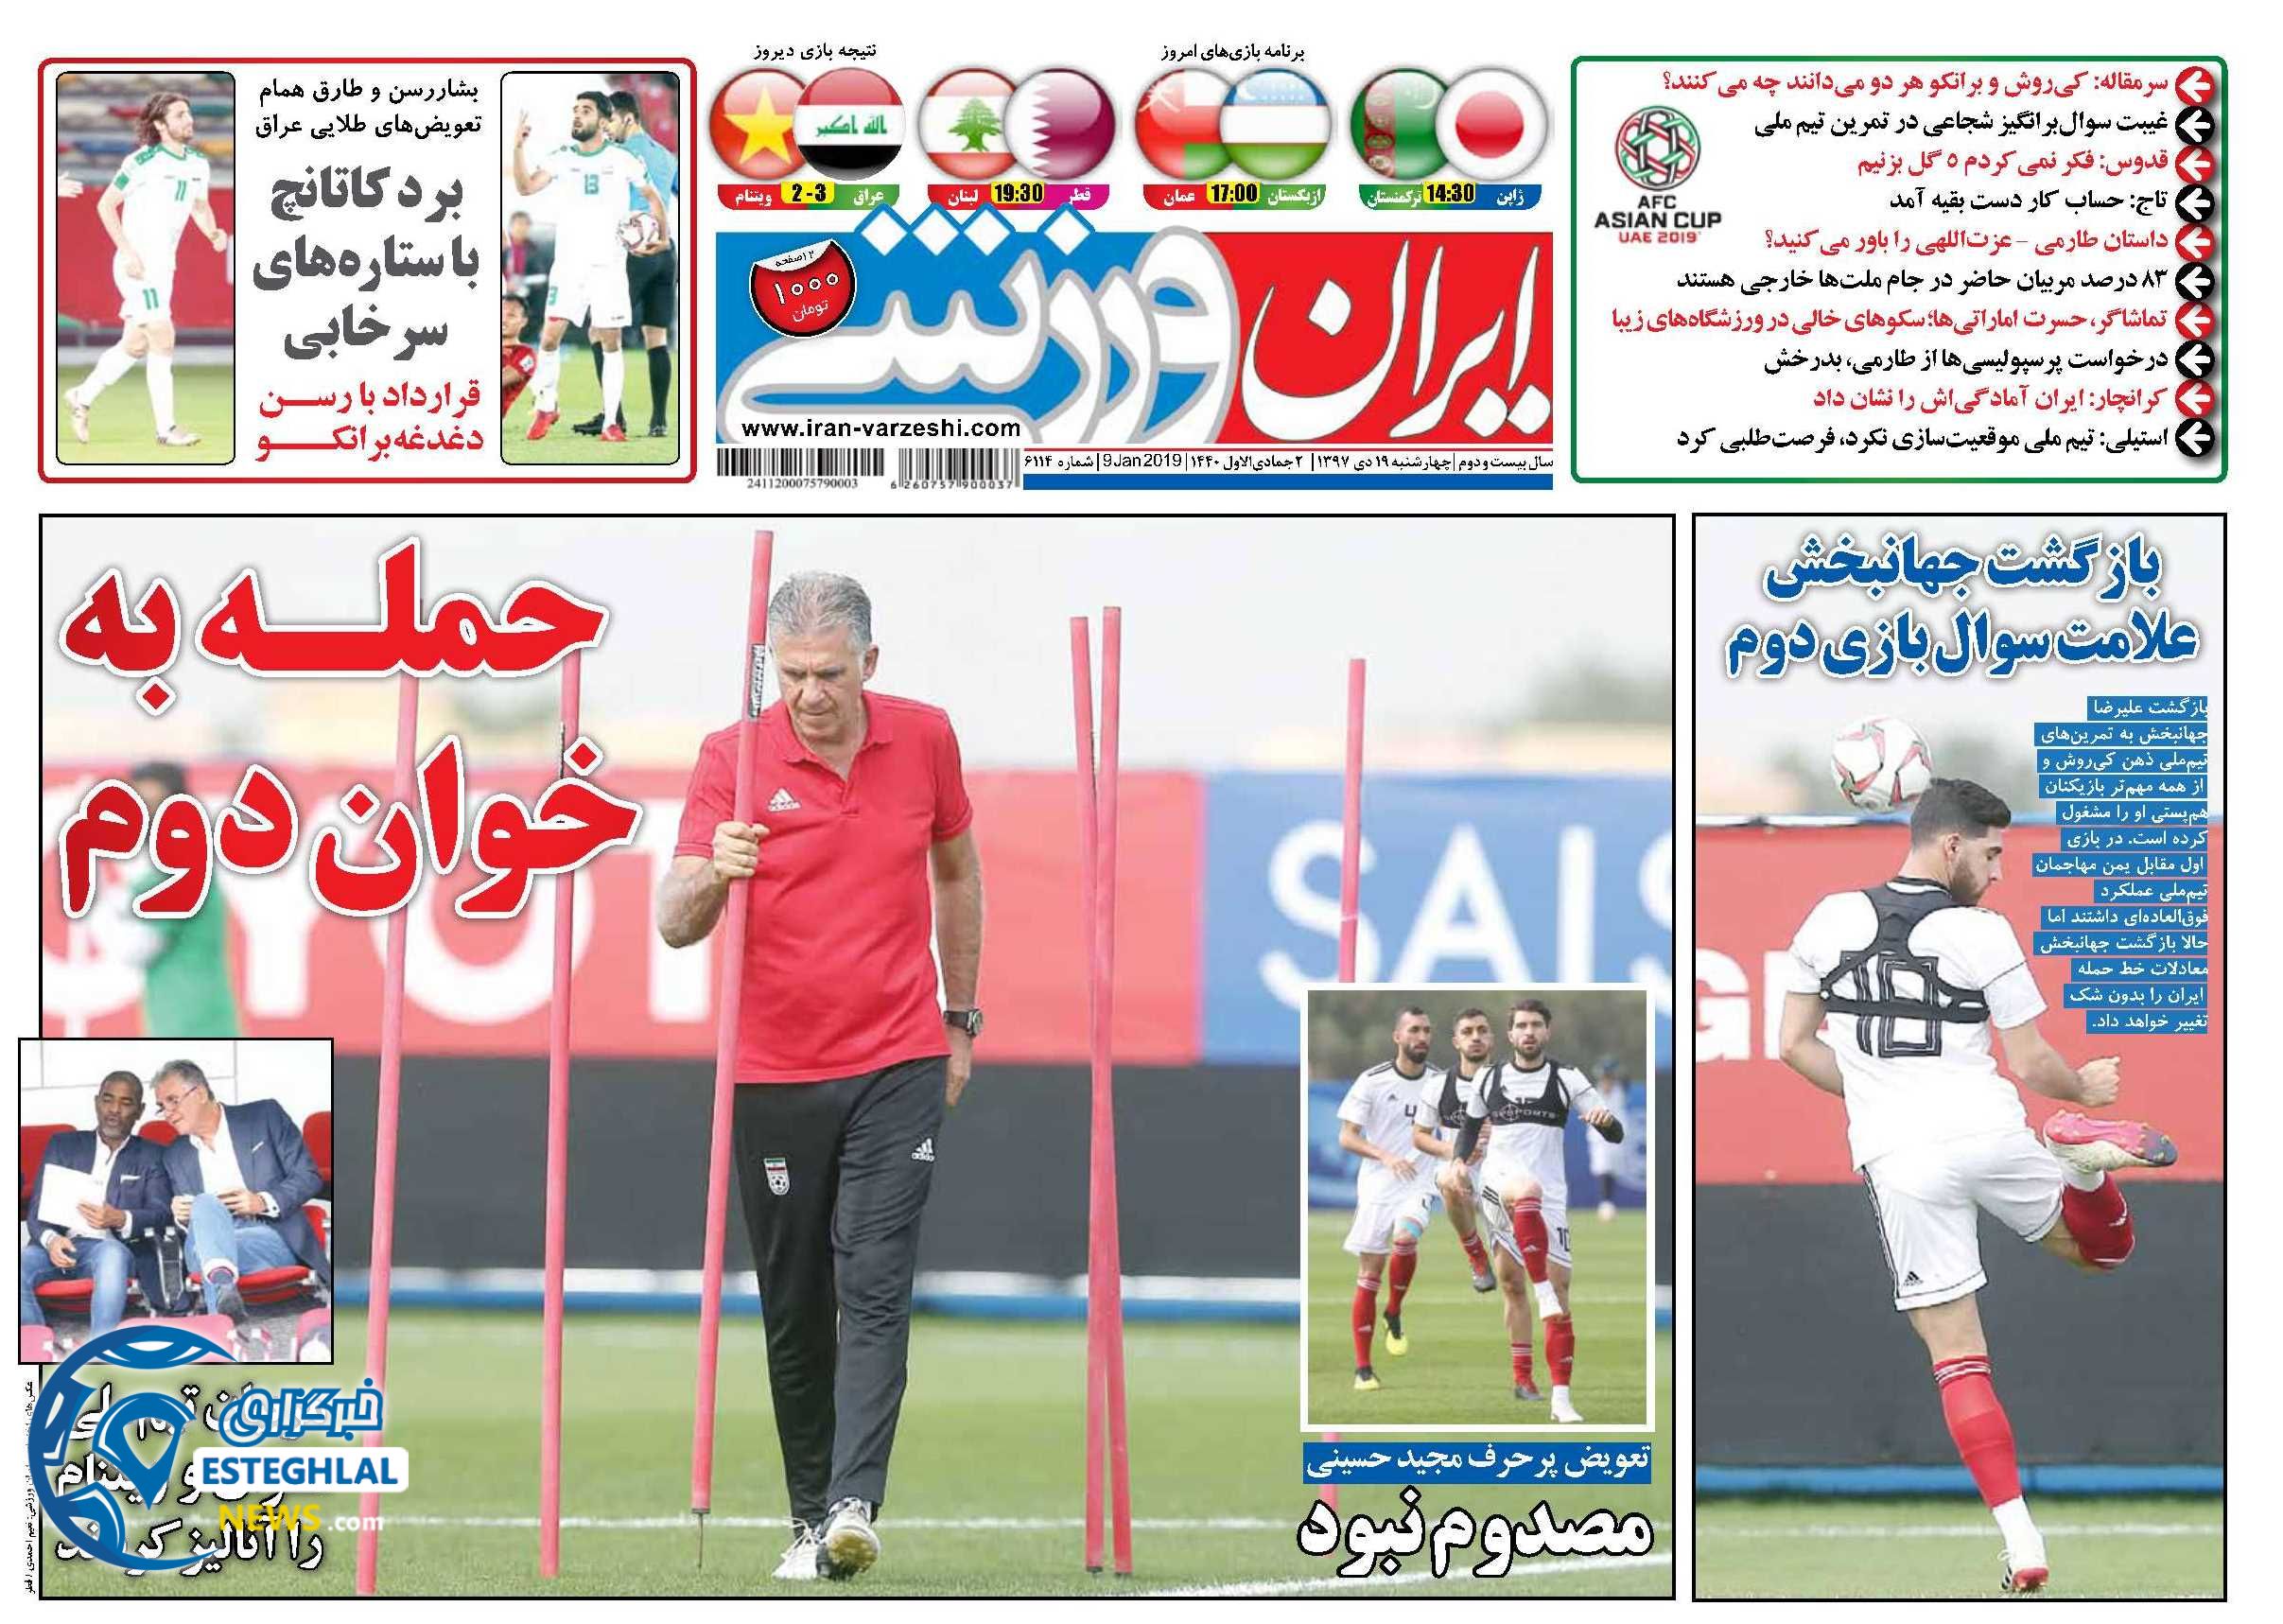 روزنامه ایران ورزشی چهارشنبه 19 دی 1397               